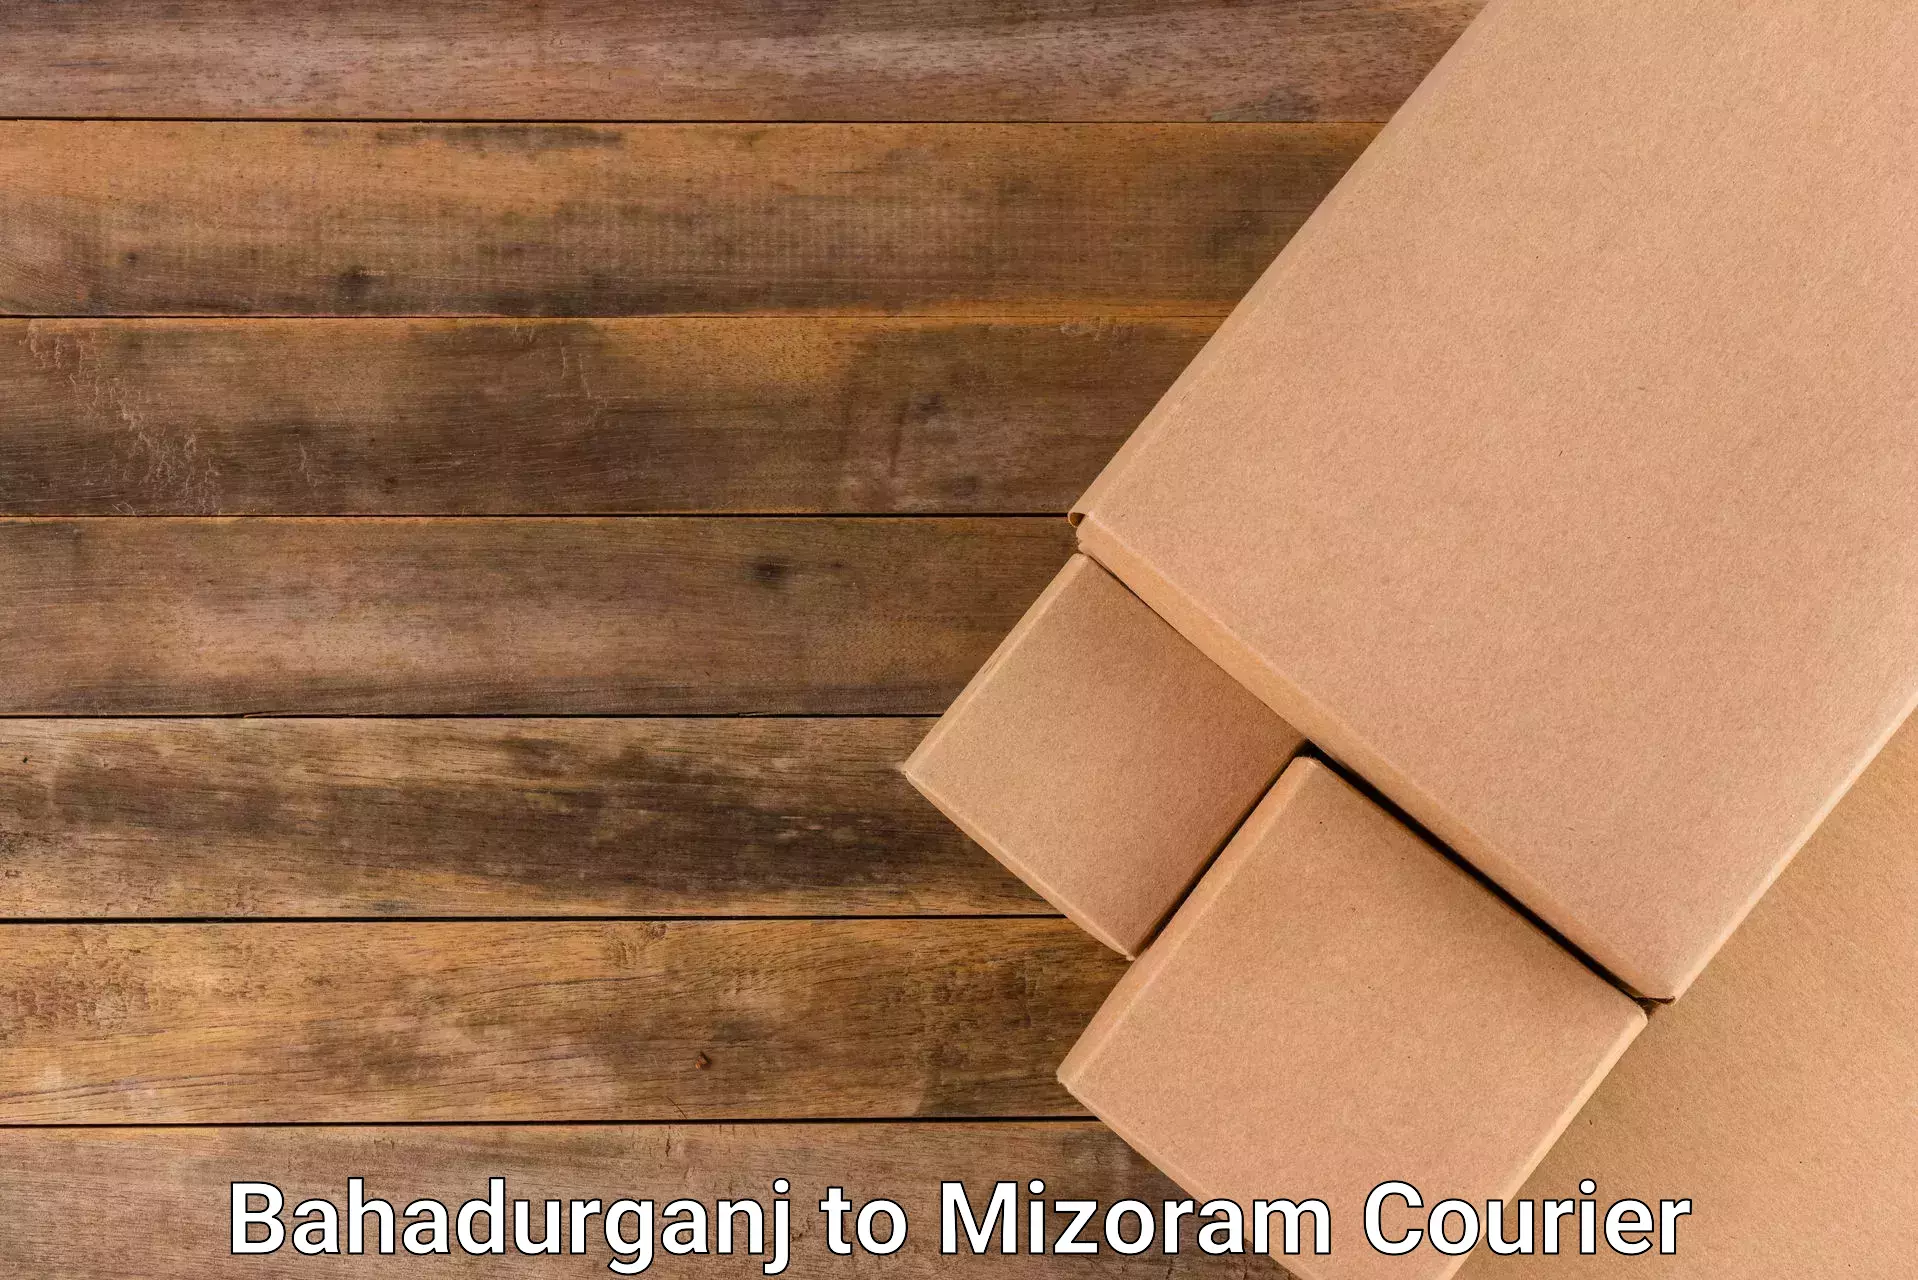 Smart logistics solutions Bahadurganj to Aizawl